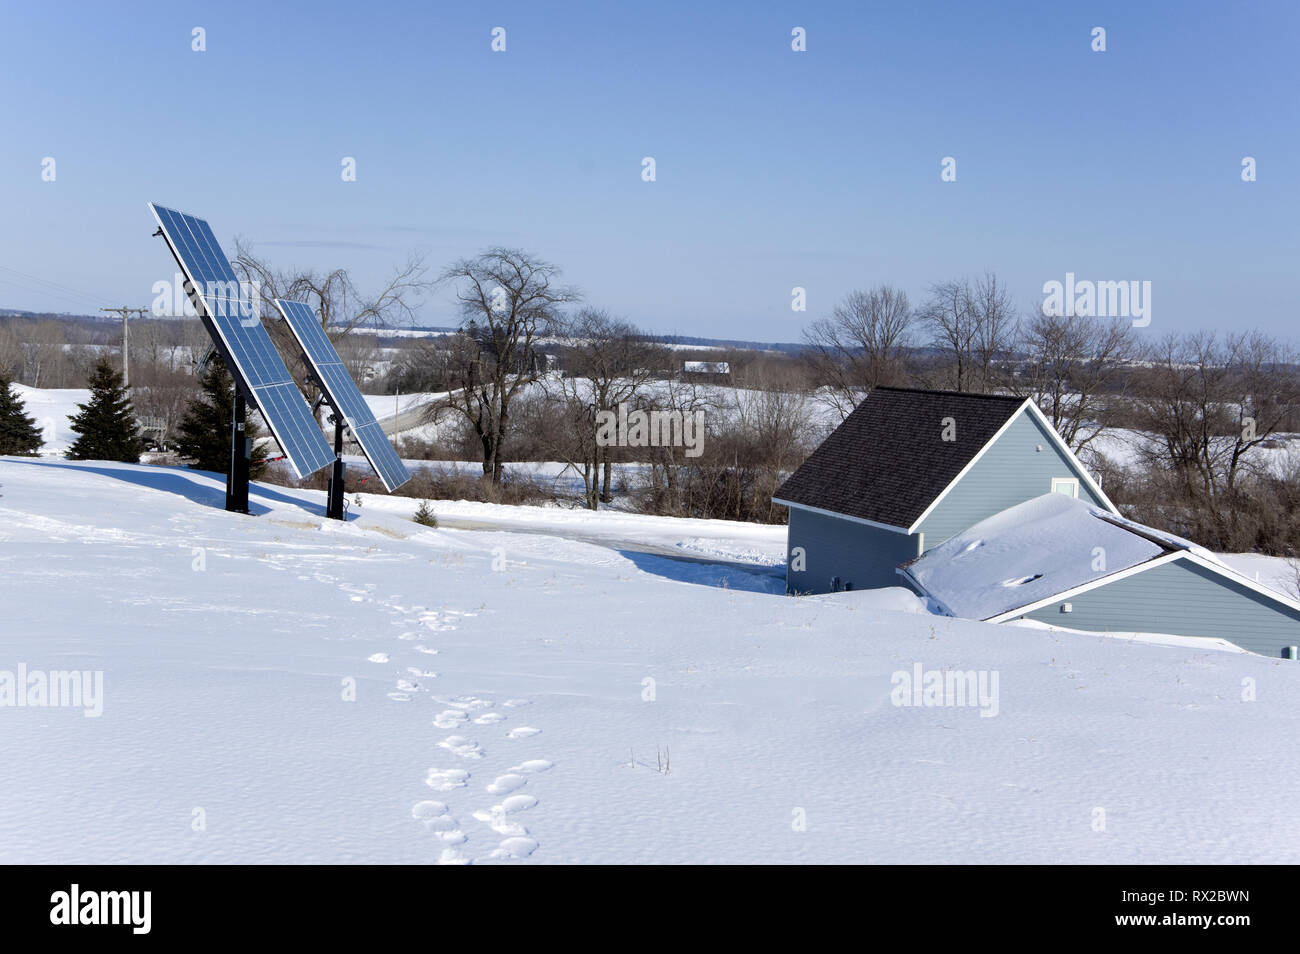 Casa cubierta de la tierra con paneles solares fotovoltaicos en un entorno rural de invierno. Foto de stock